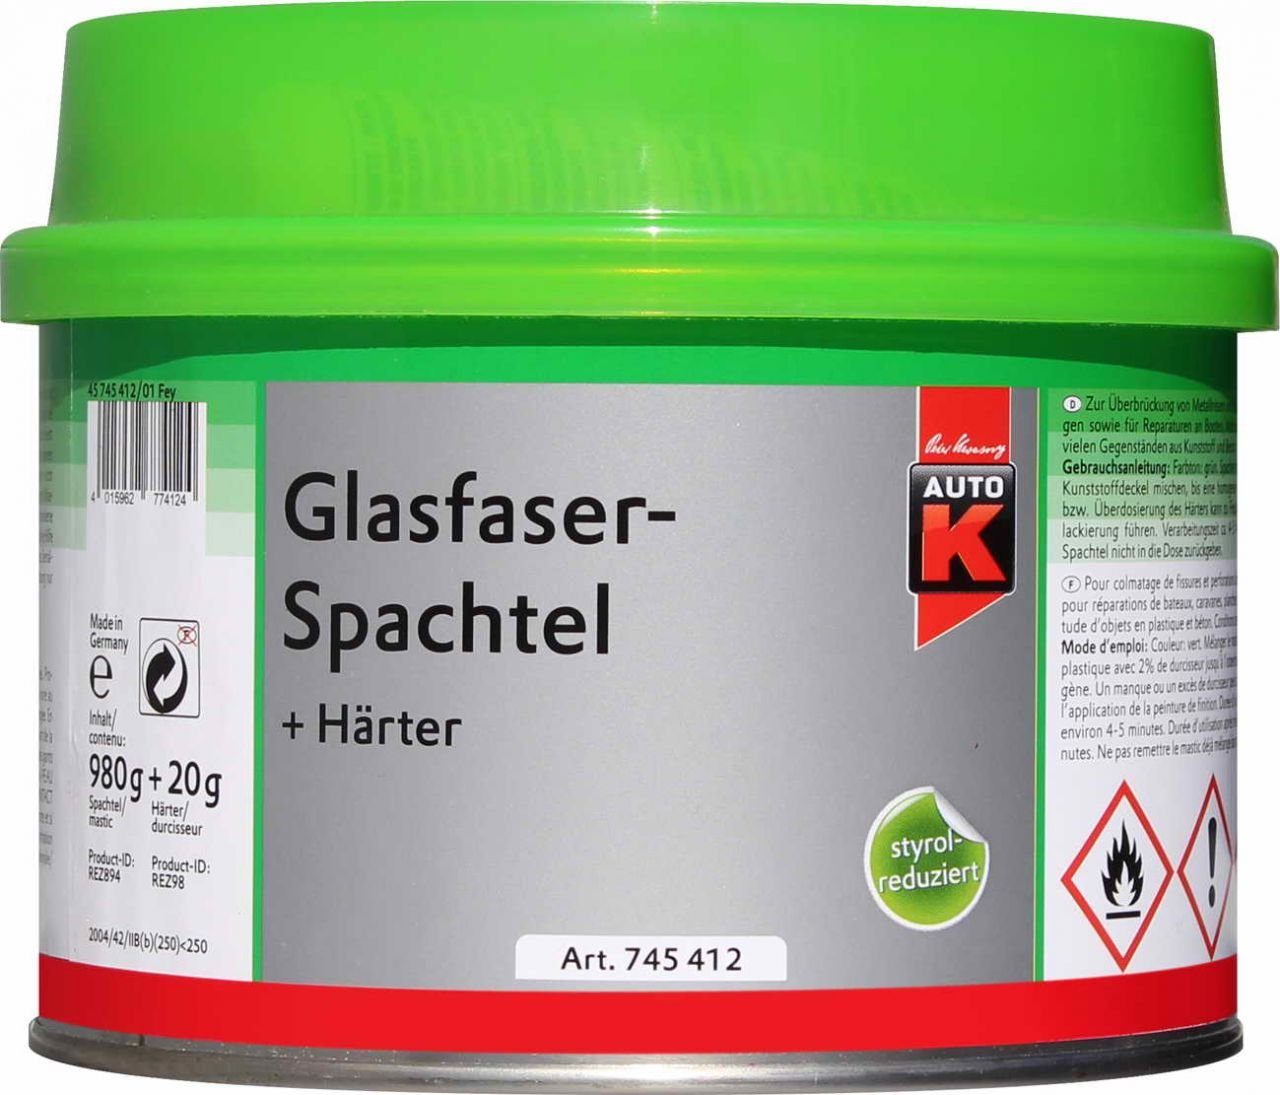 1000g + Breitspachtel Auto-K Glasfaserspachtel Auto-K Härter